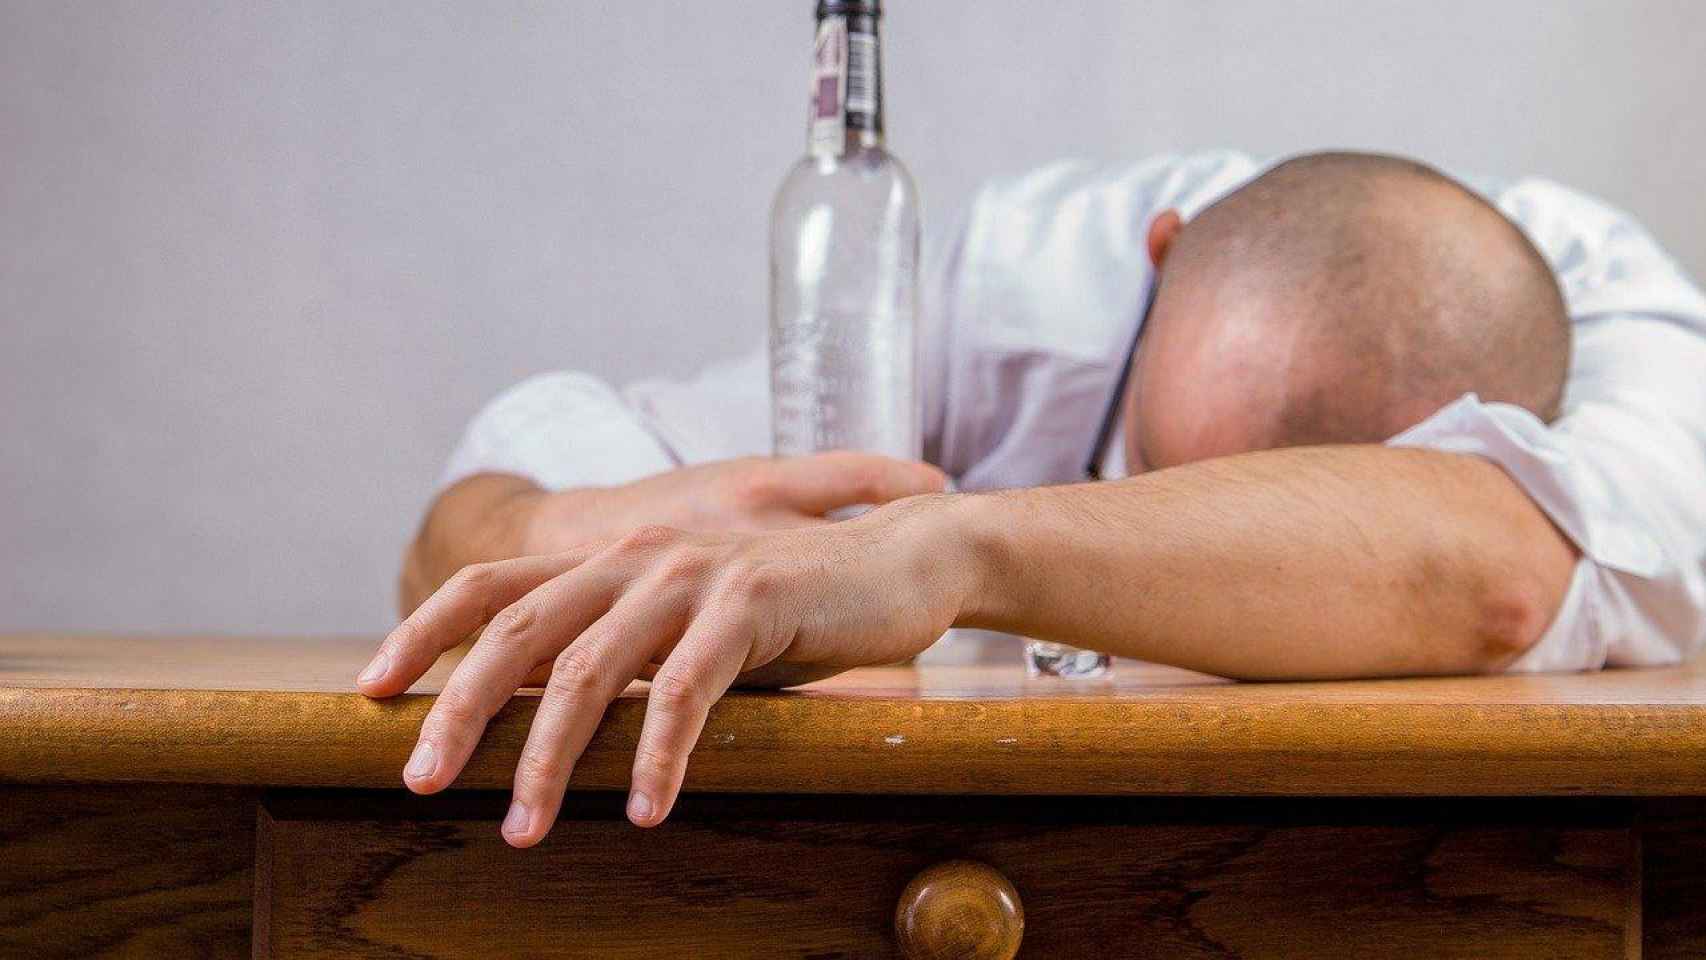 Un hombre junto a una botella de alcohol vacía, para ilustrar la adicción / PIXABAY